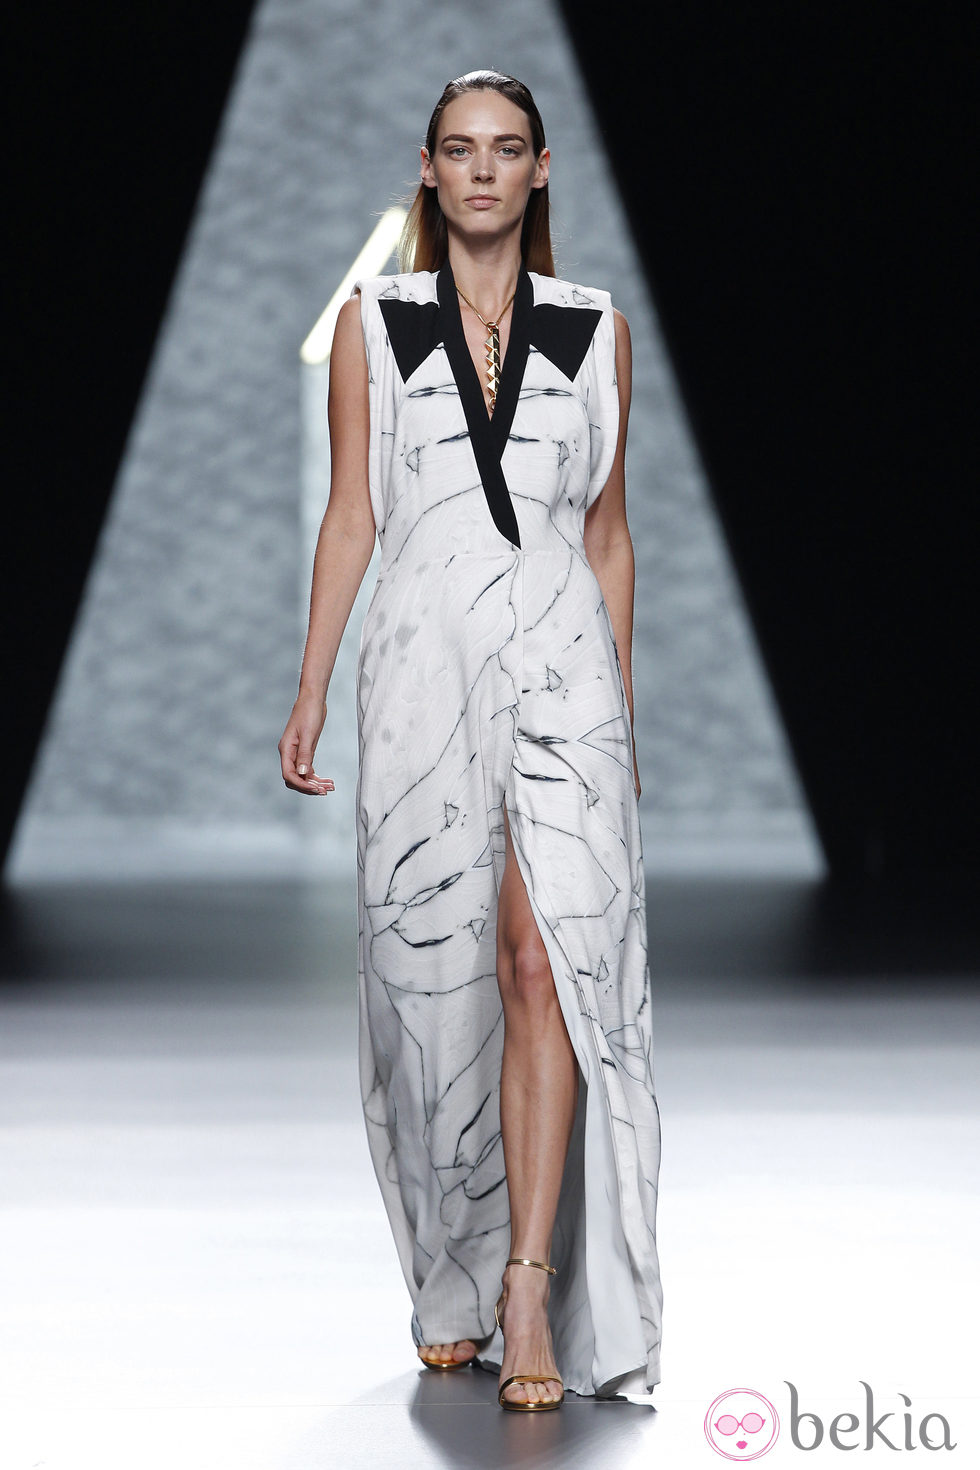 Vestido estampado de la colección primavera/verano 2014 de Ana Locking en Madrid Fashion Week